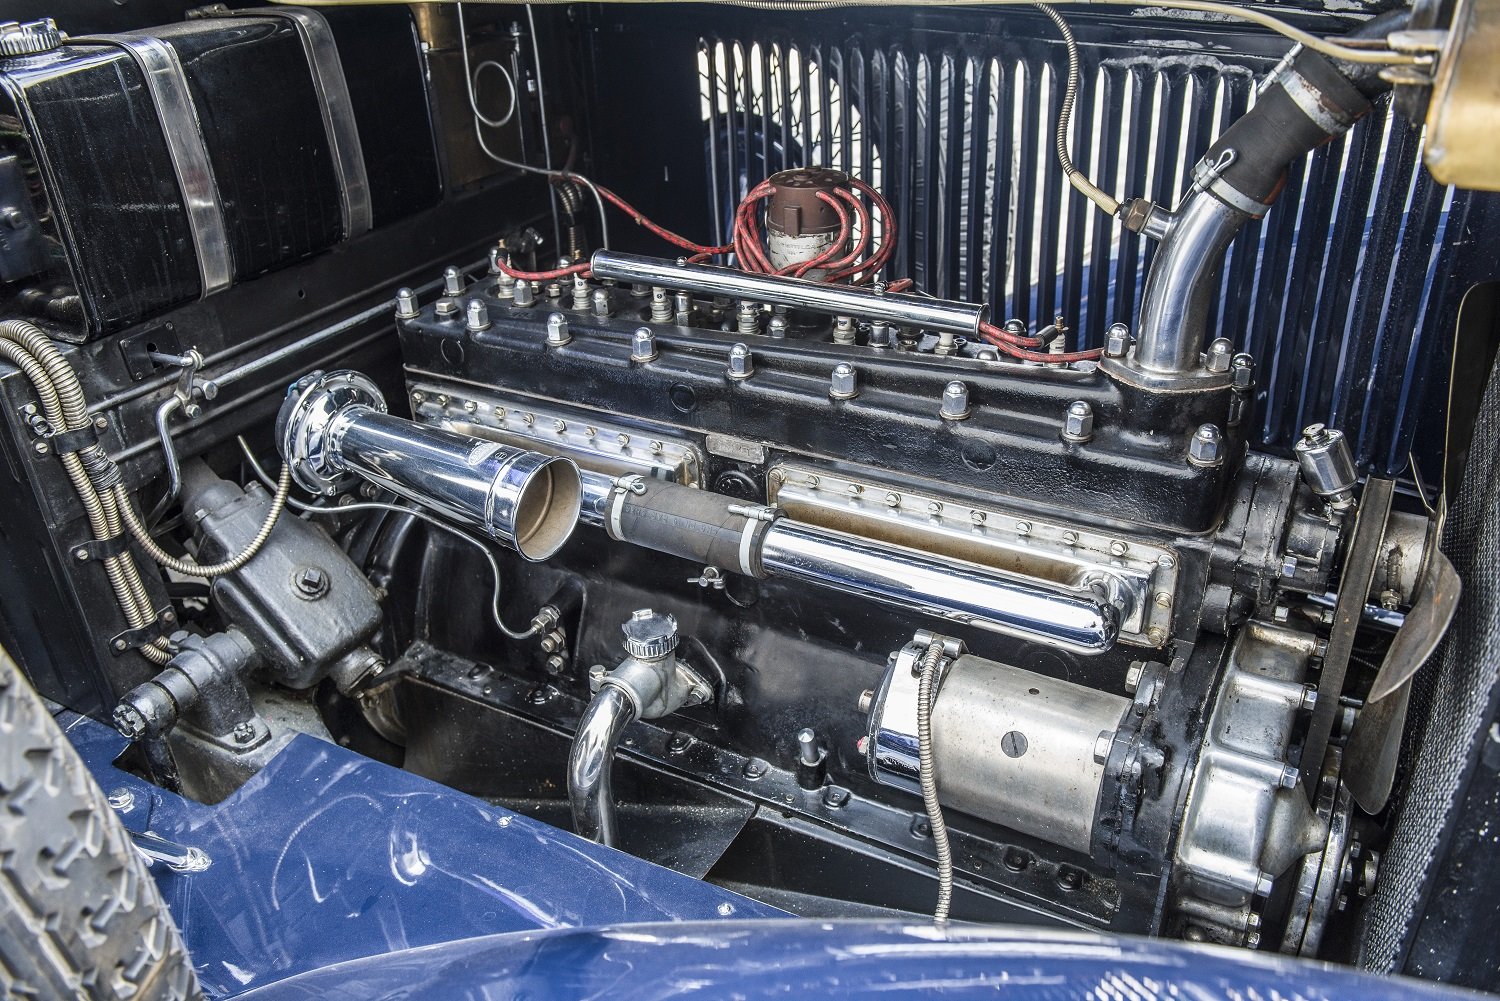 Srdcem vozidla je vodou chlazený řadový osmiálec o objemu 3380 cm³ s výkonem 44 kW, mistrovské dílo tehdejší doby.